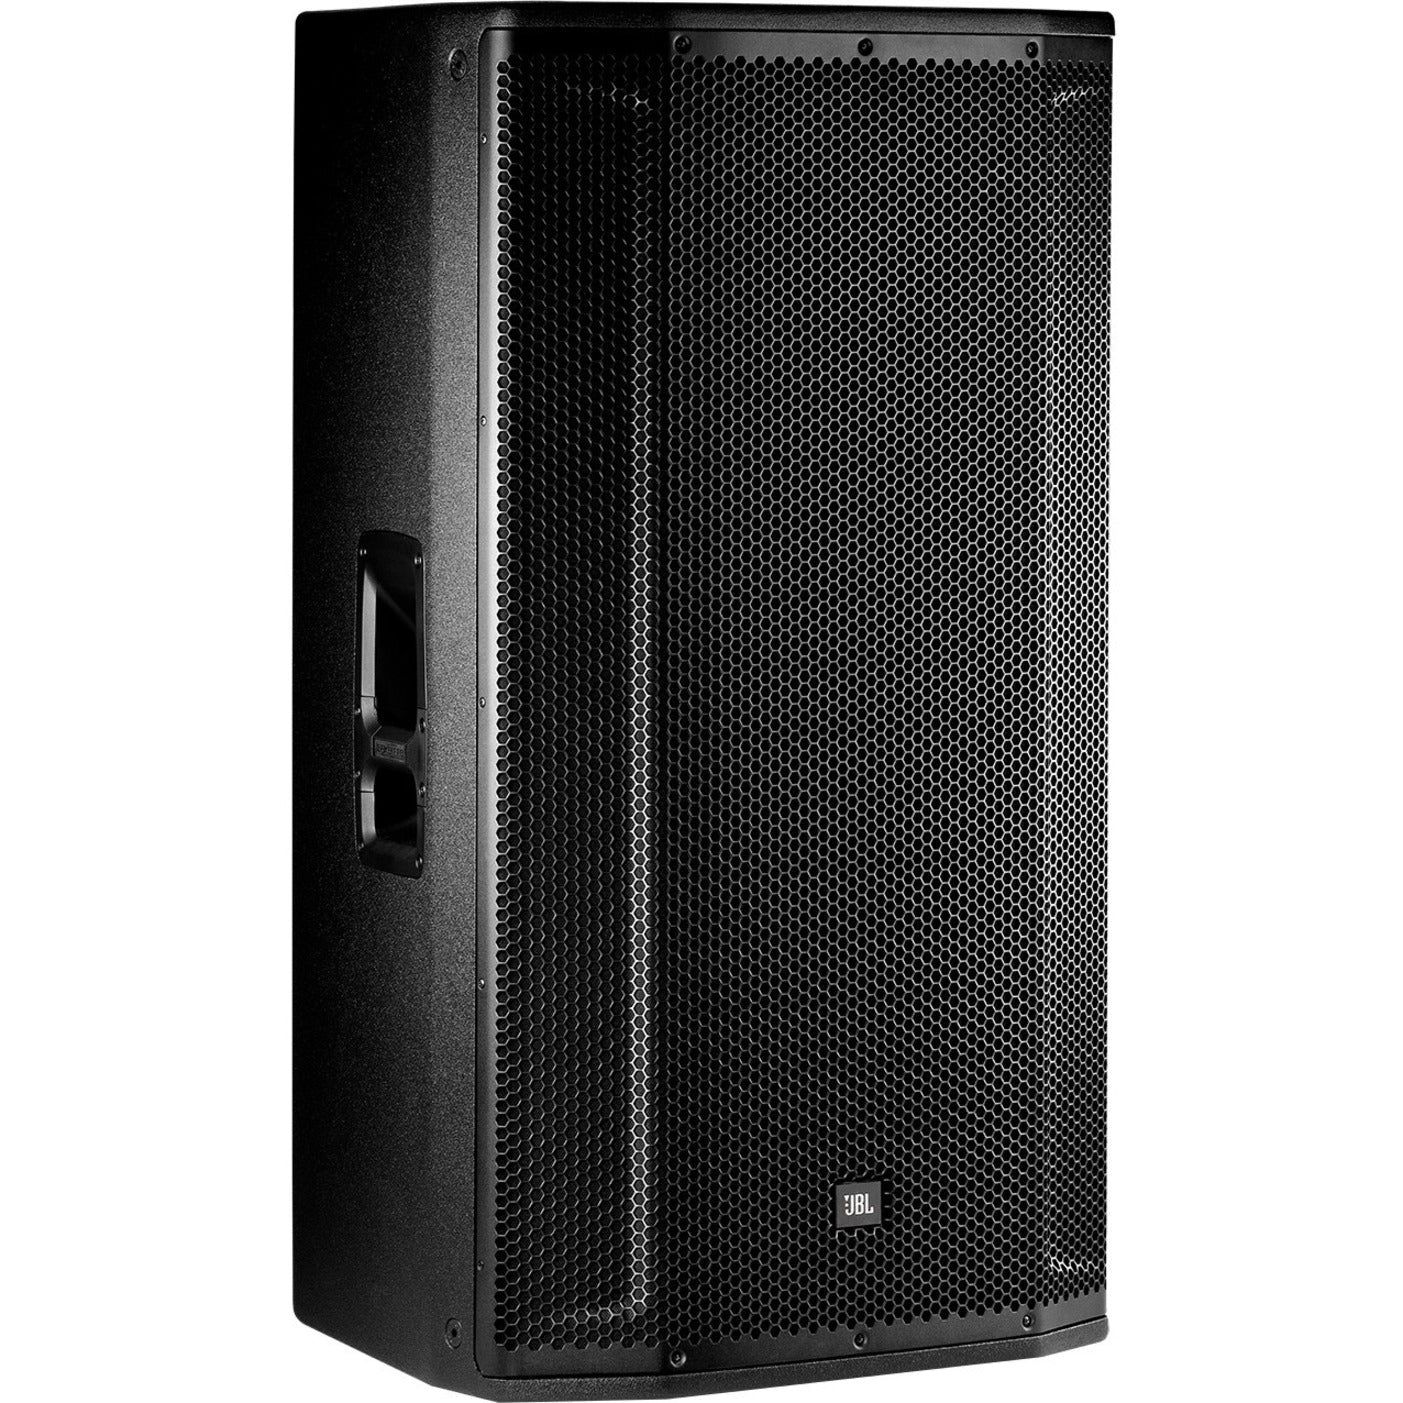 JBL Professional SRX835 Speaker System - 800 W RMS